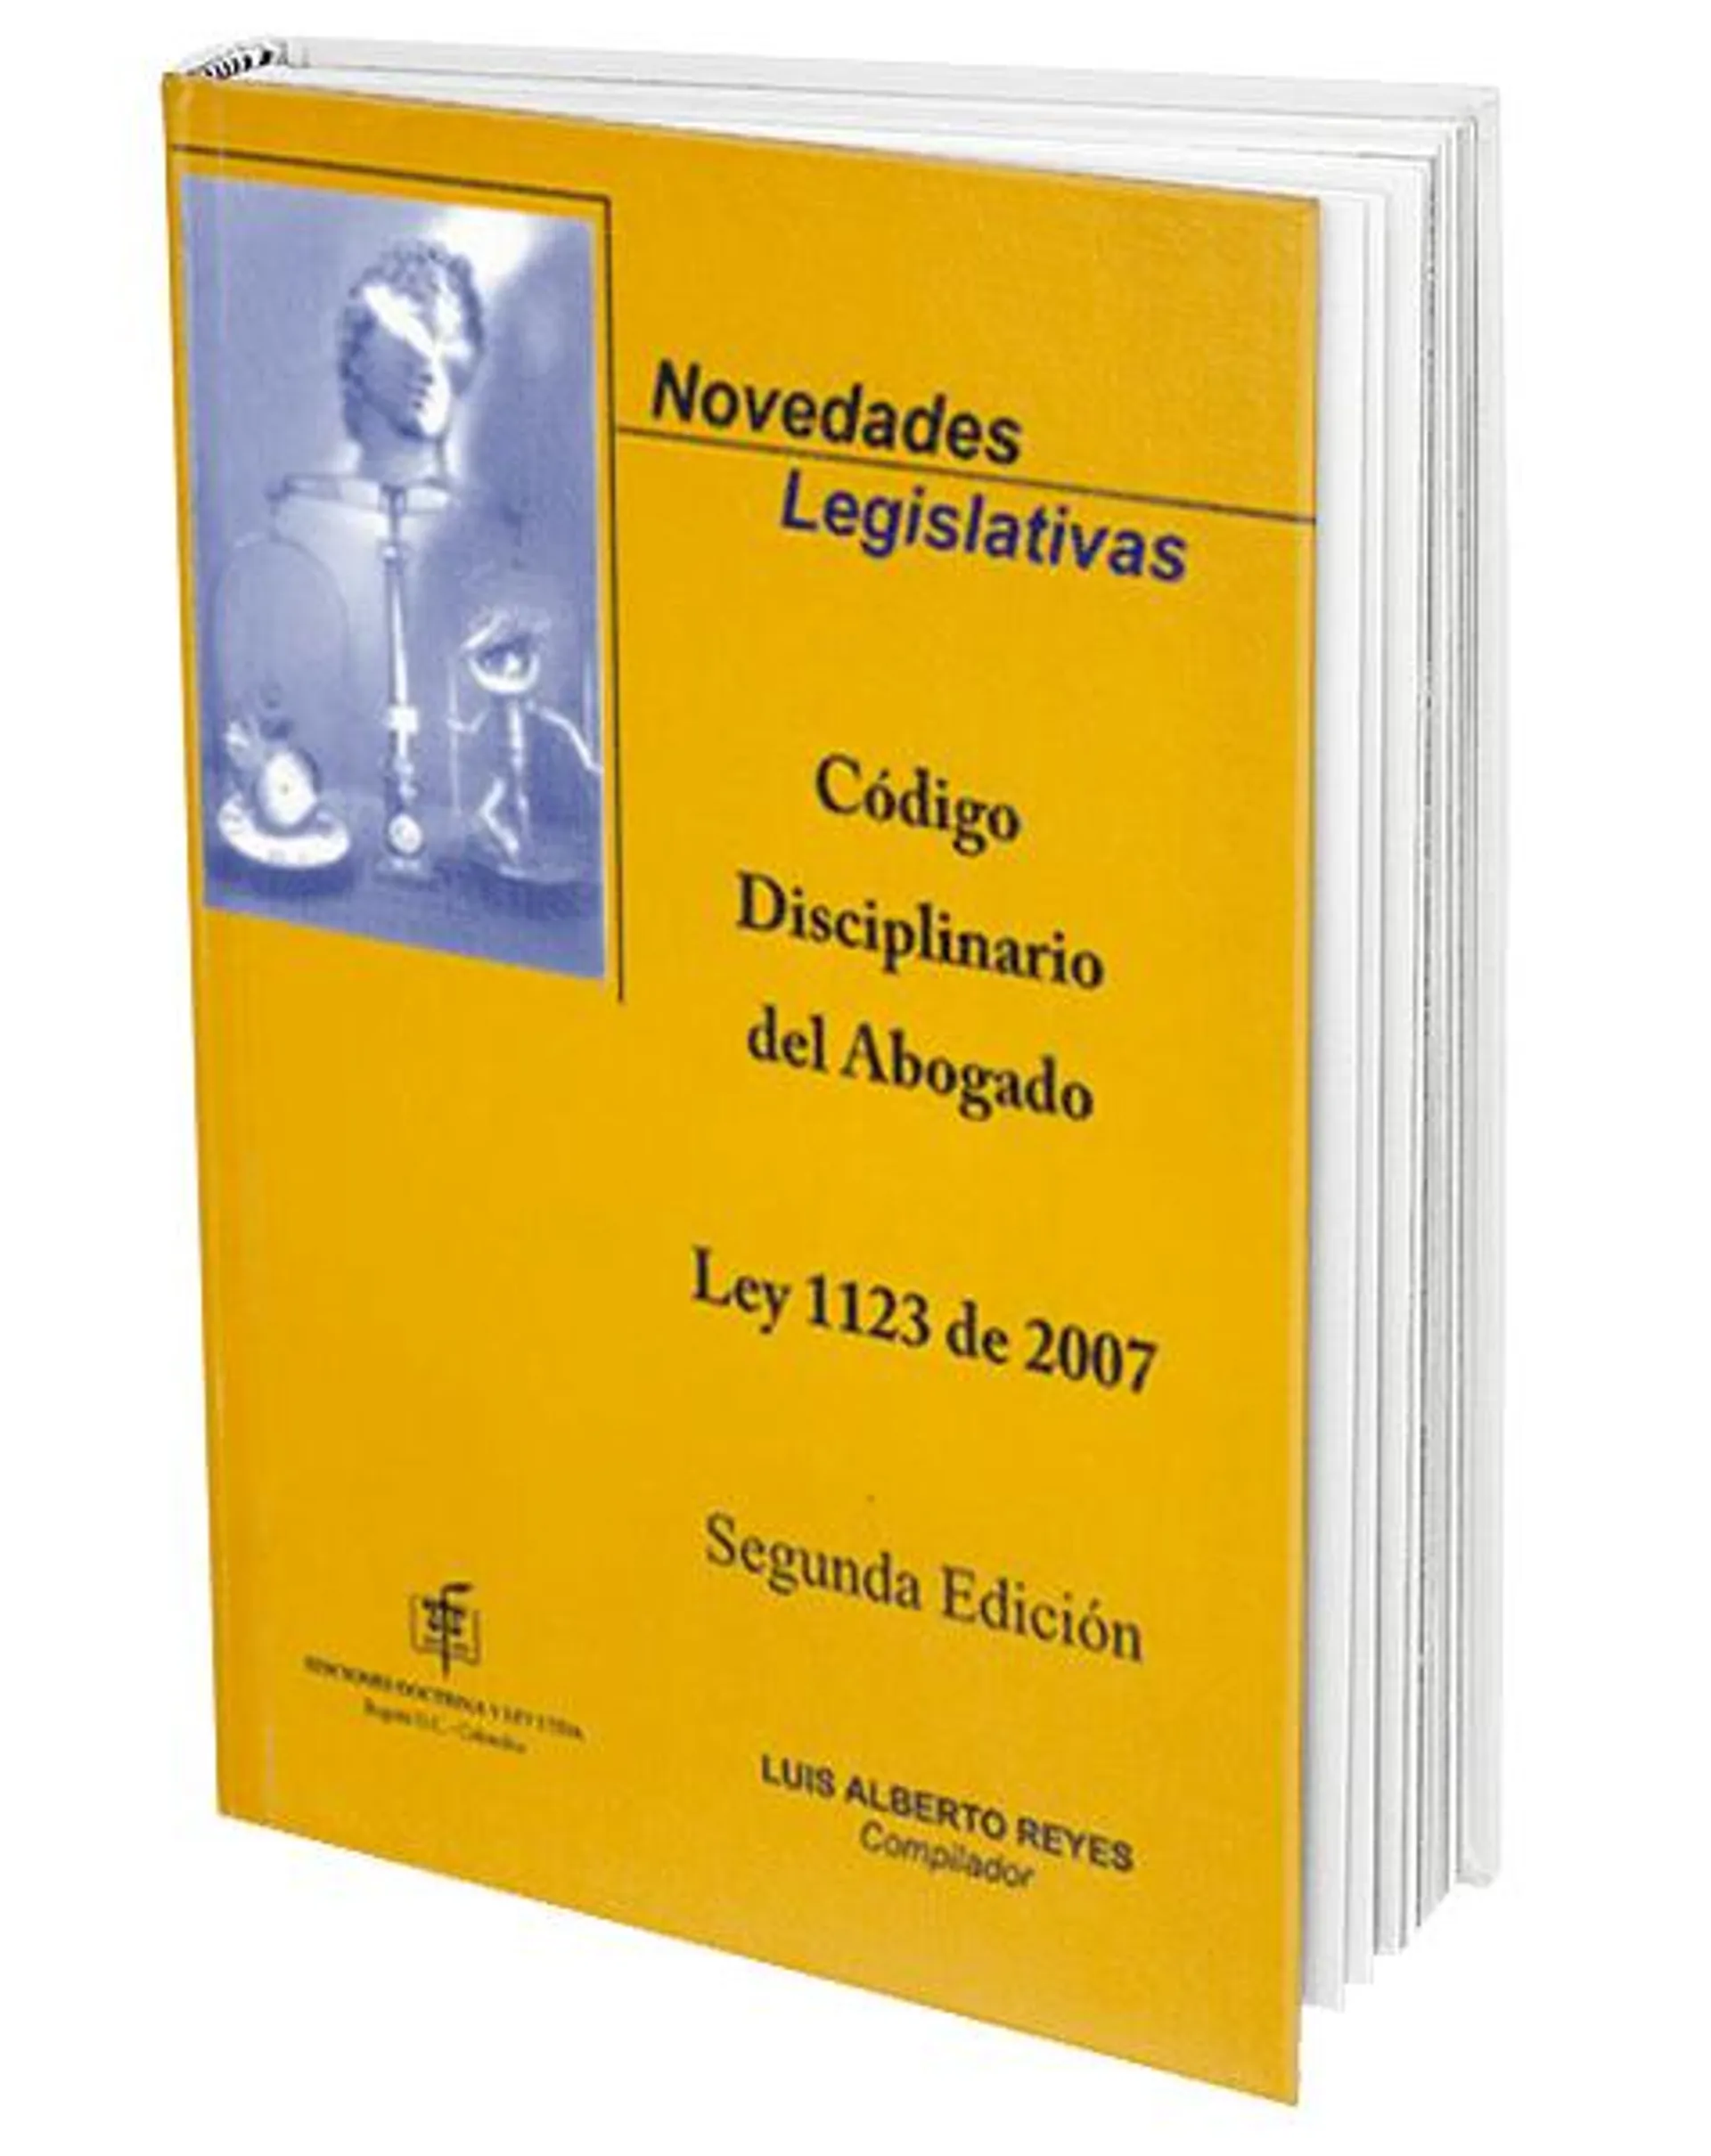 Novedades Legislativas. Código Disciplinario del Abogado. Ley 1123 de 2007